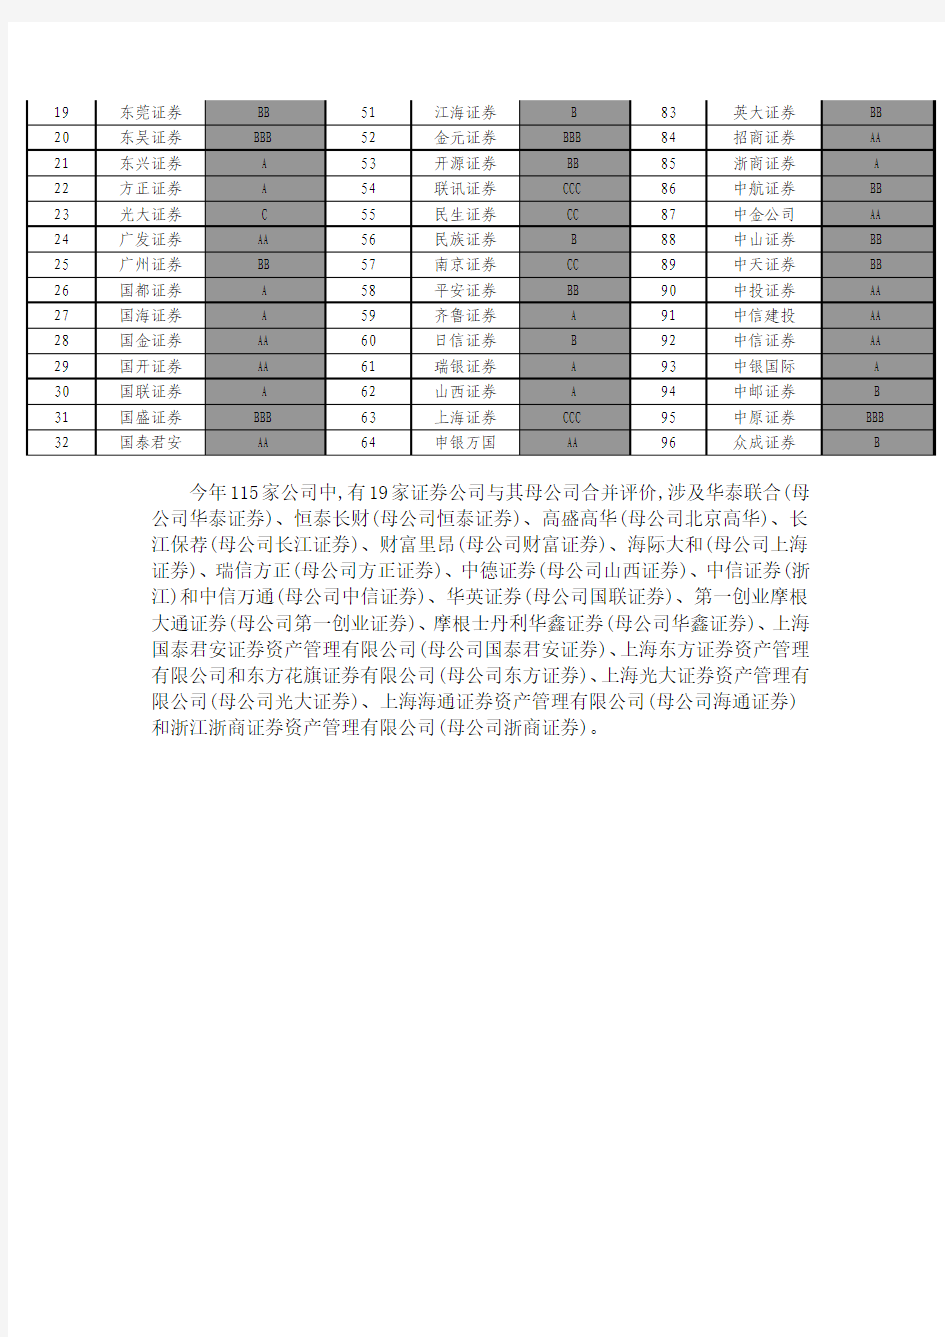 2014年证券公司分类结果